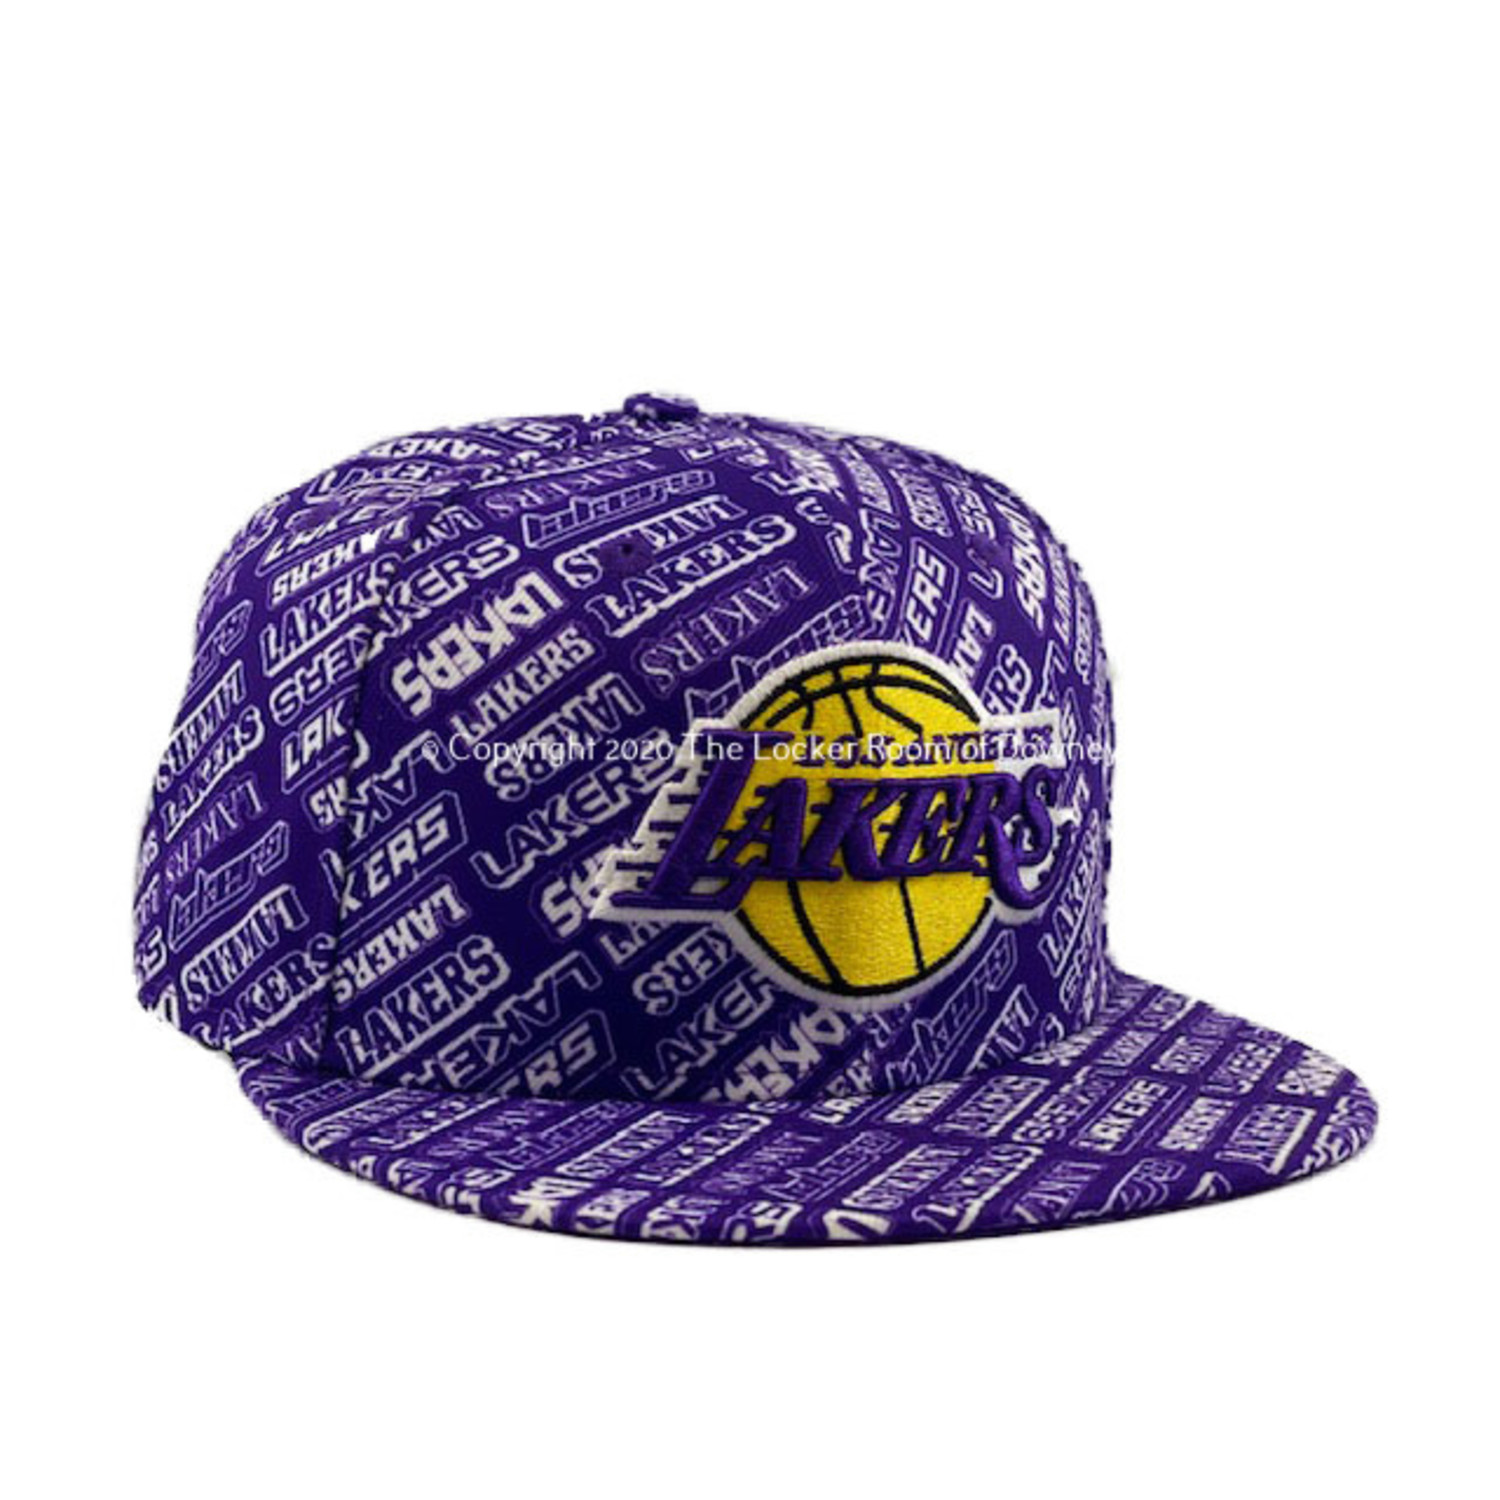 LA Lakers New Era 950 Black Stretch Snapback Cap